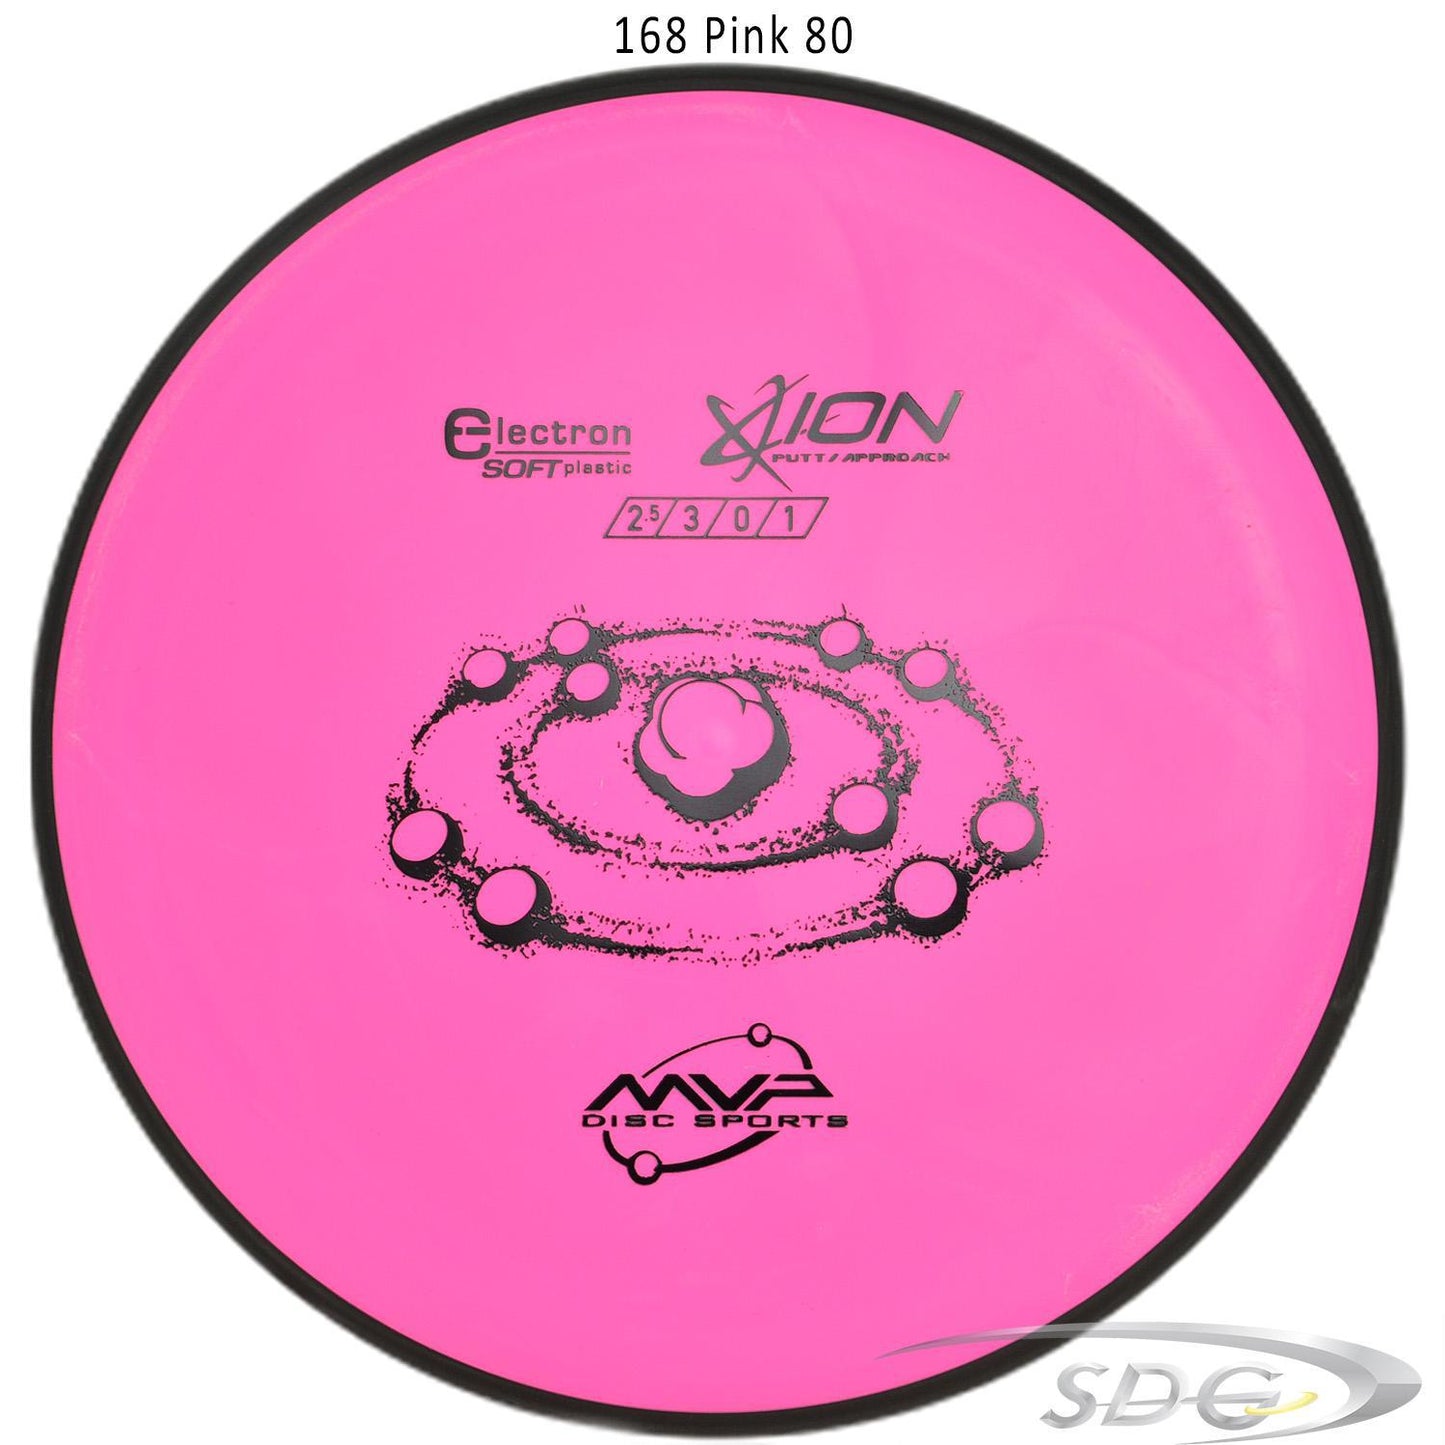 mvp-electron-ion-soft-disc-golf-putt-approach 168 Pink 80 